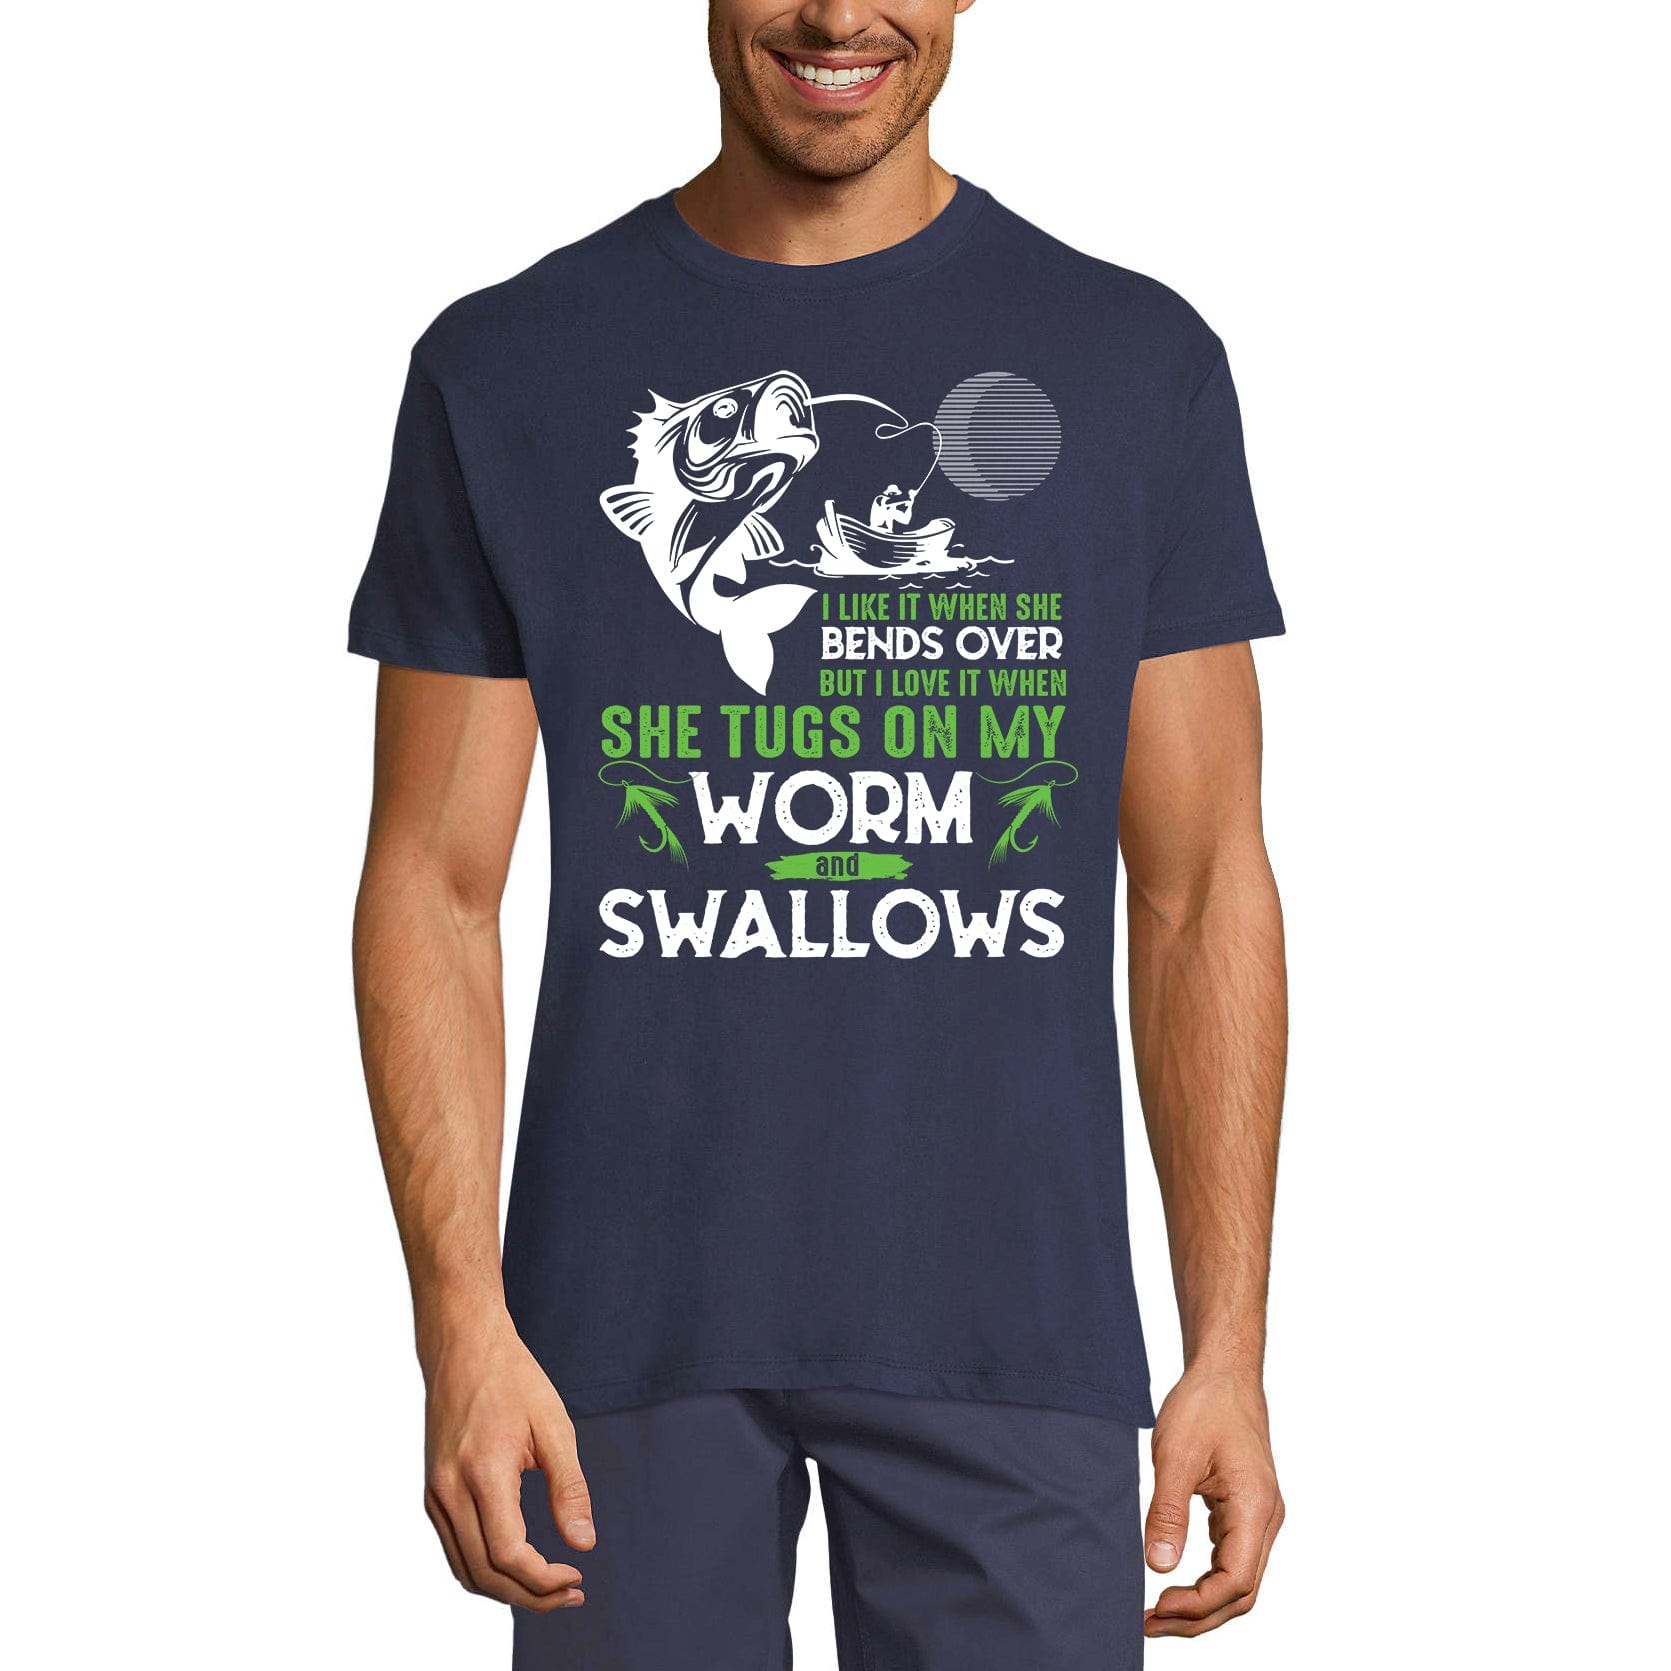 ULTRABASIC Men's T-Shirt Funny Fishing Quote - Humor Sarcasm Fisherman